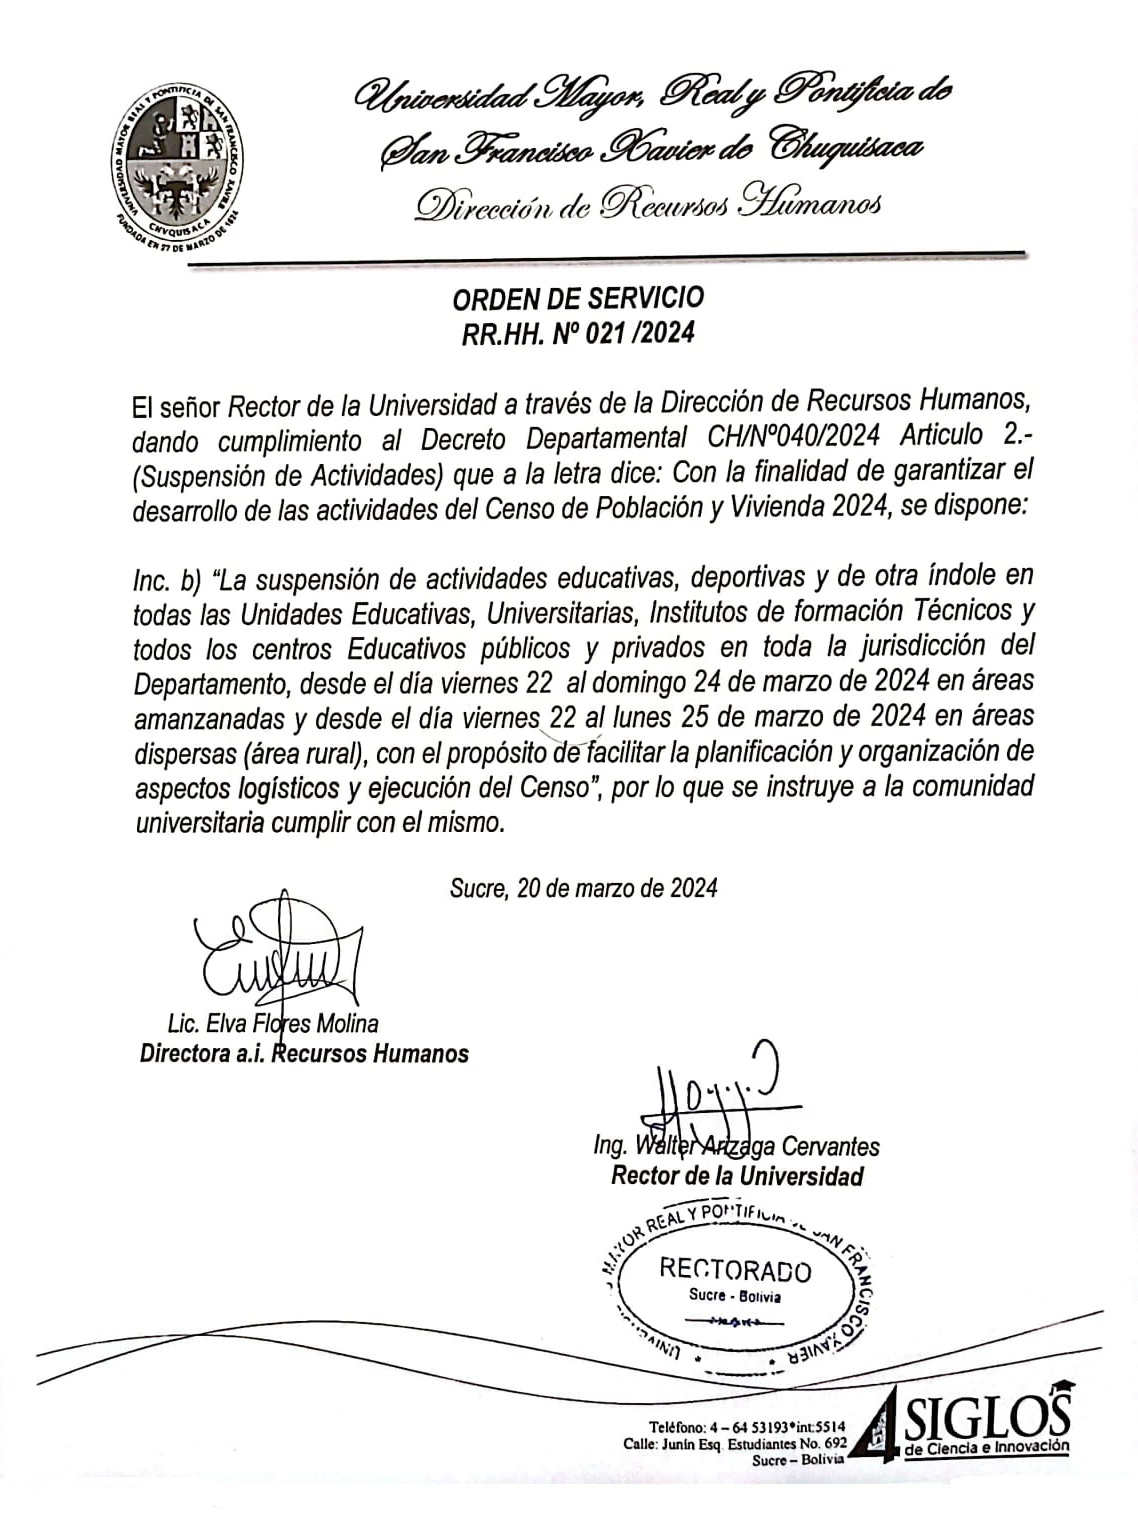 ORDEN DE SERVICIO RR.HH. Nº 021/2024, GARANTIZAR LAS ACTIVIDADES DEL CENSO 2024.